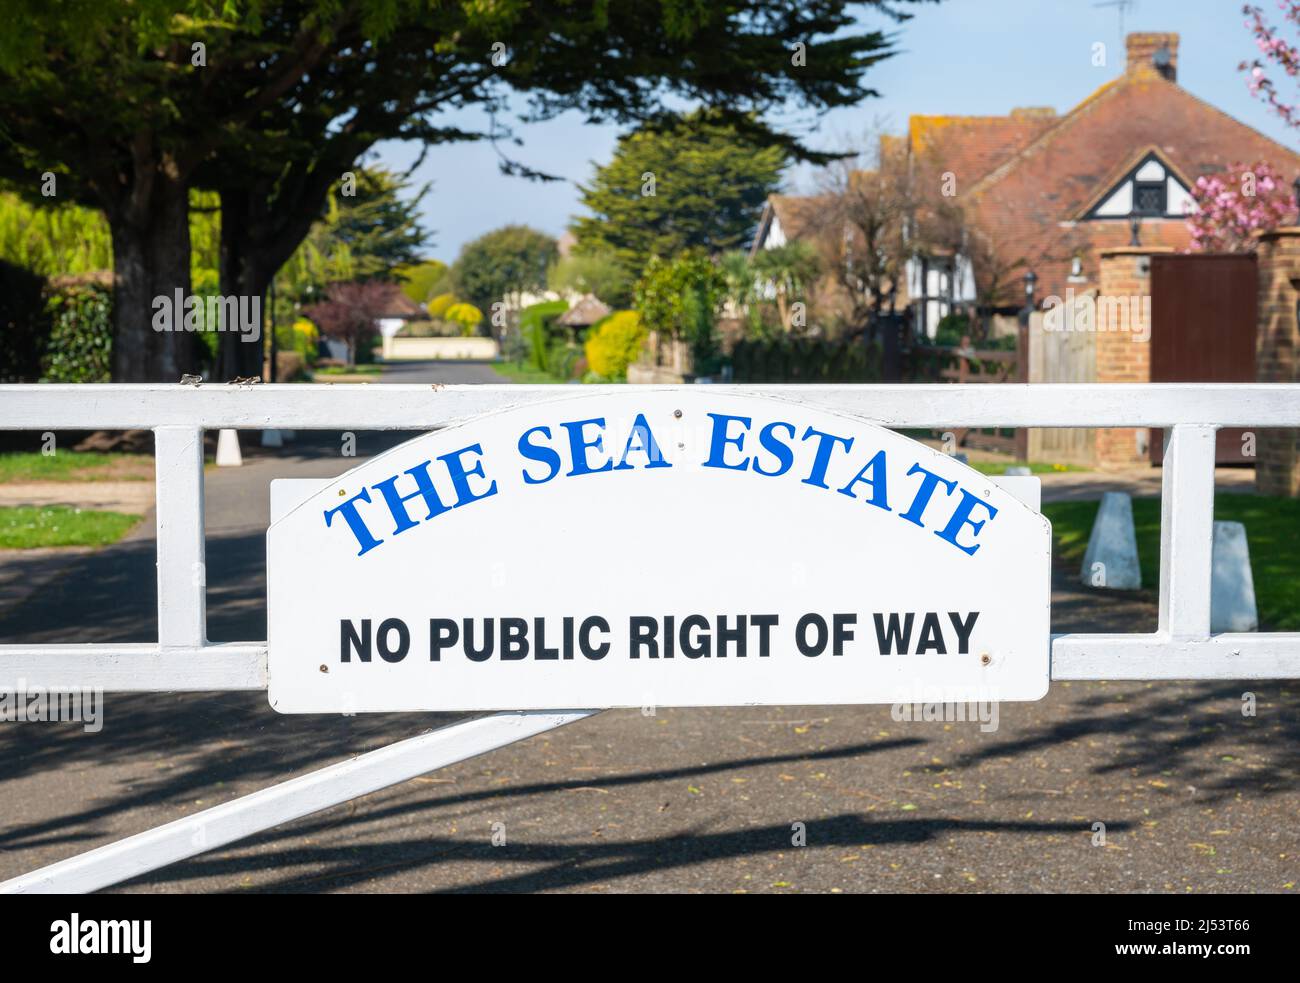 Señal y puerta en la entrada de Sea Estate, una propiedad privada sin derecho público de paso en Rustington, West Sussex, Inglaterra, Reino Unido. Foto de stock